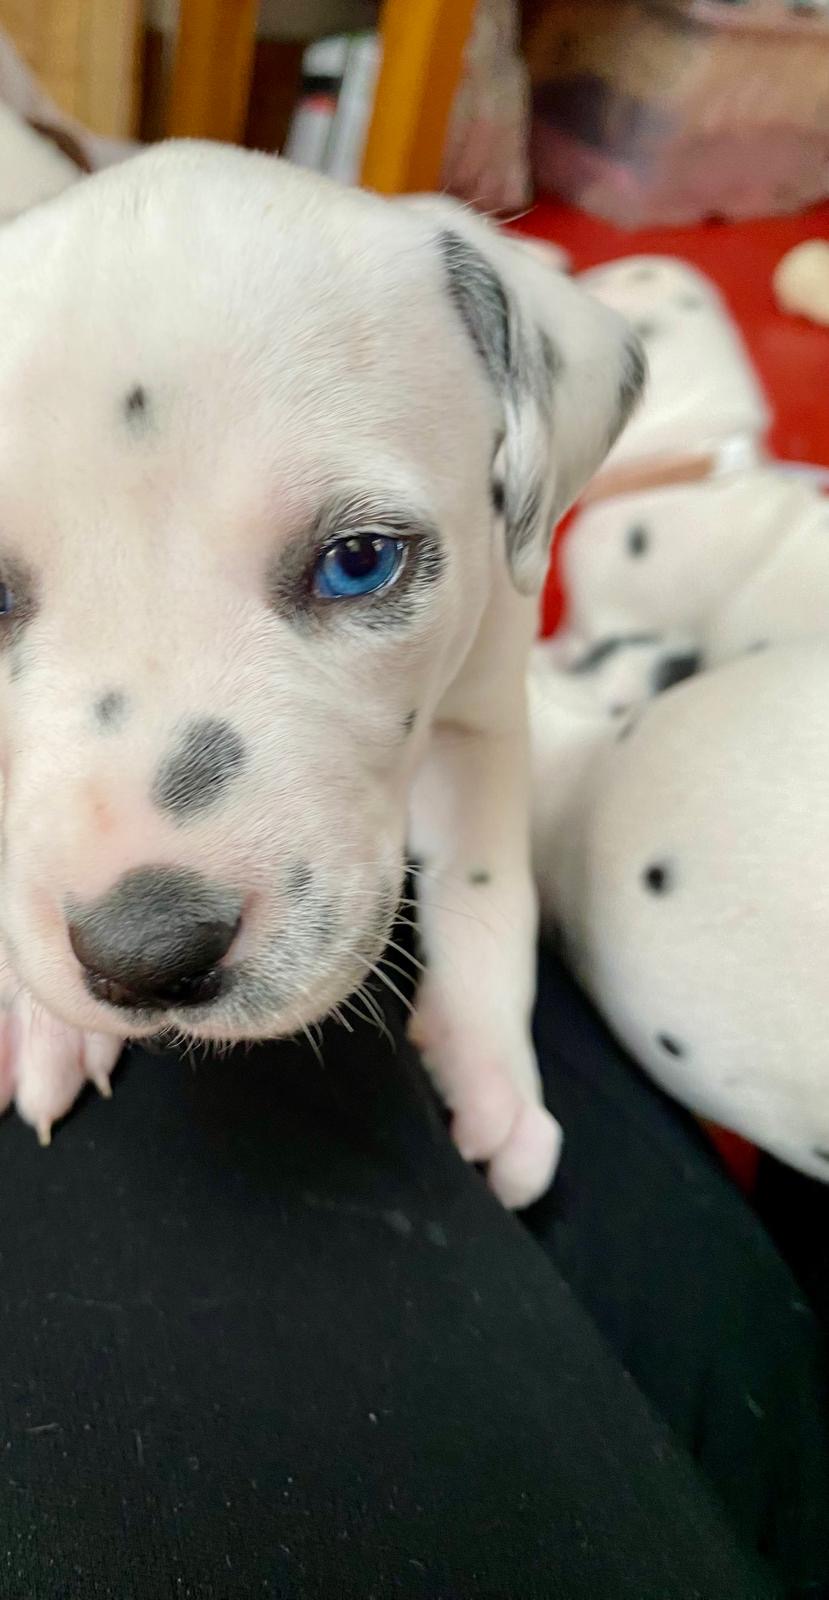 Female puppy Neeta with a blue eye